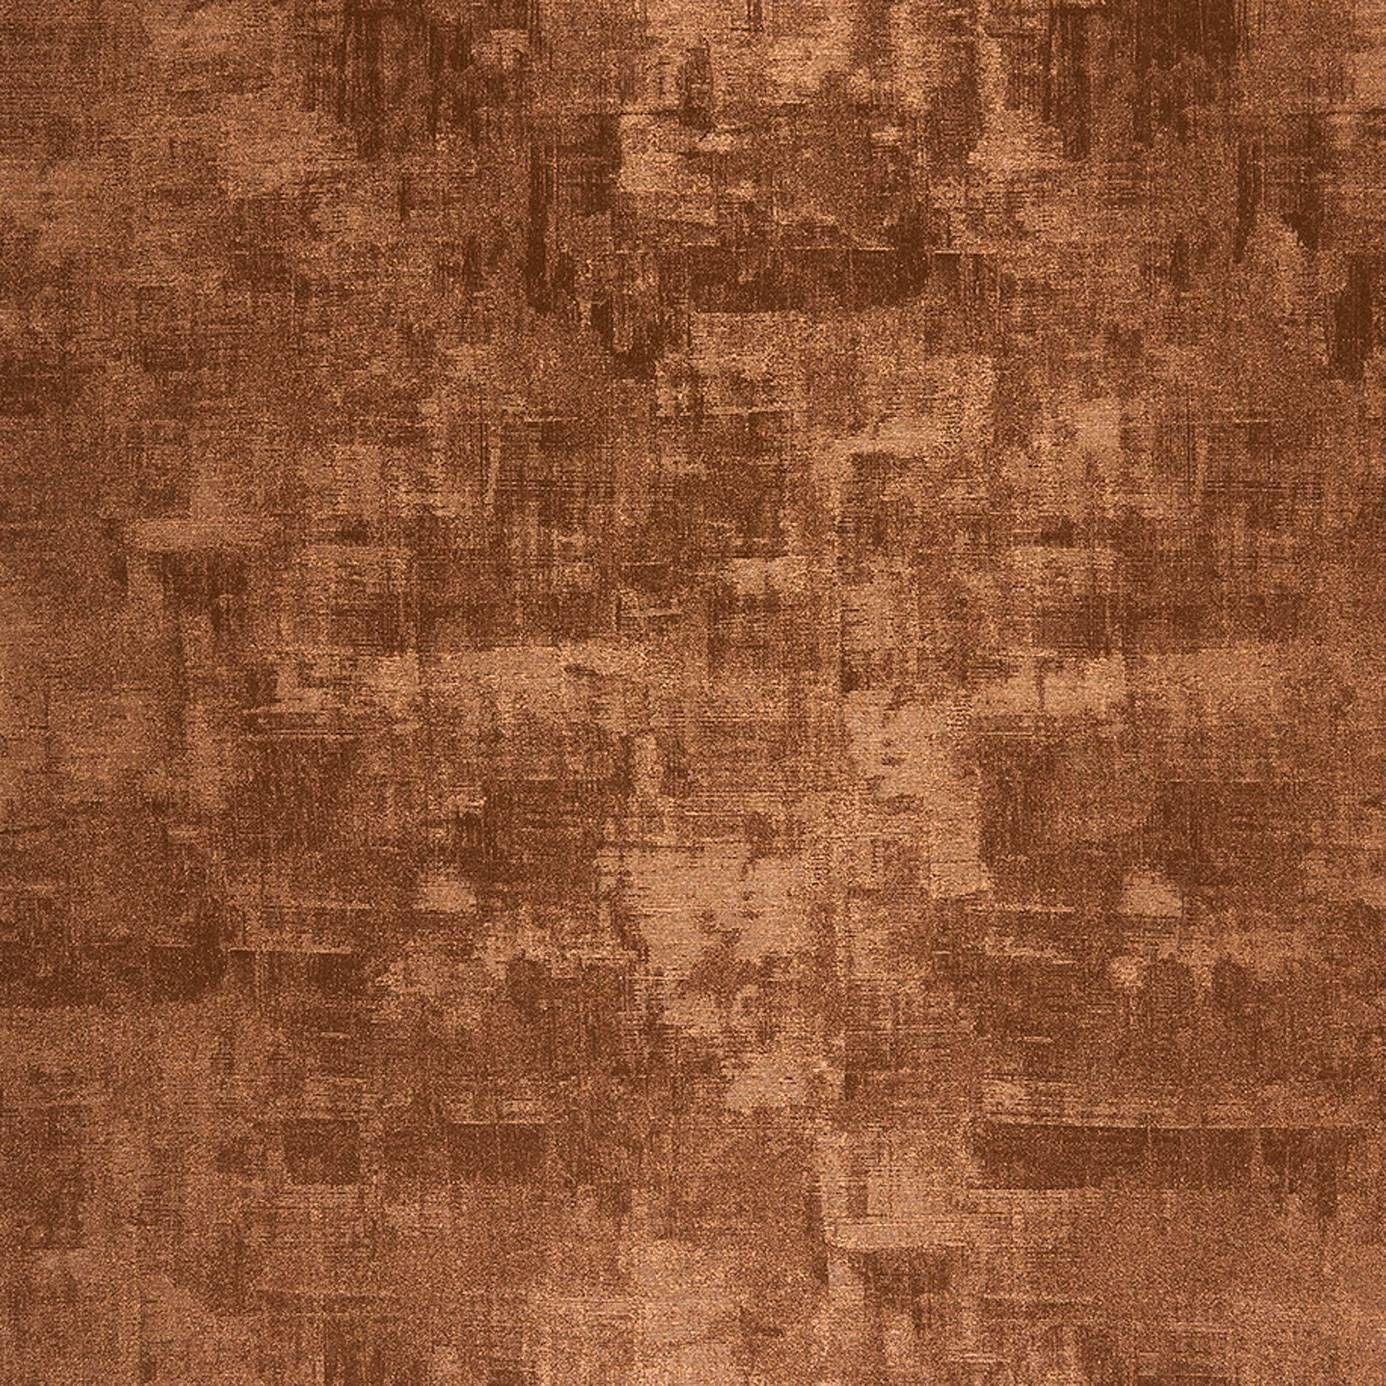 Copper HD wallpapers  Pxfuel